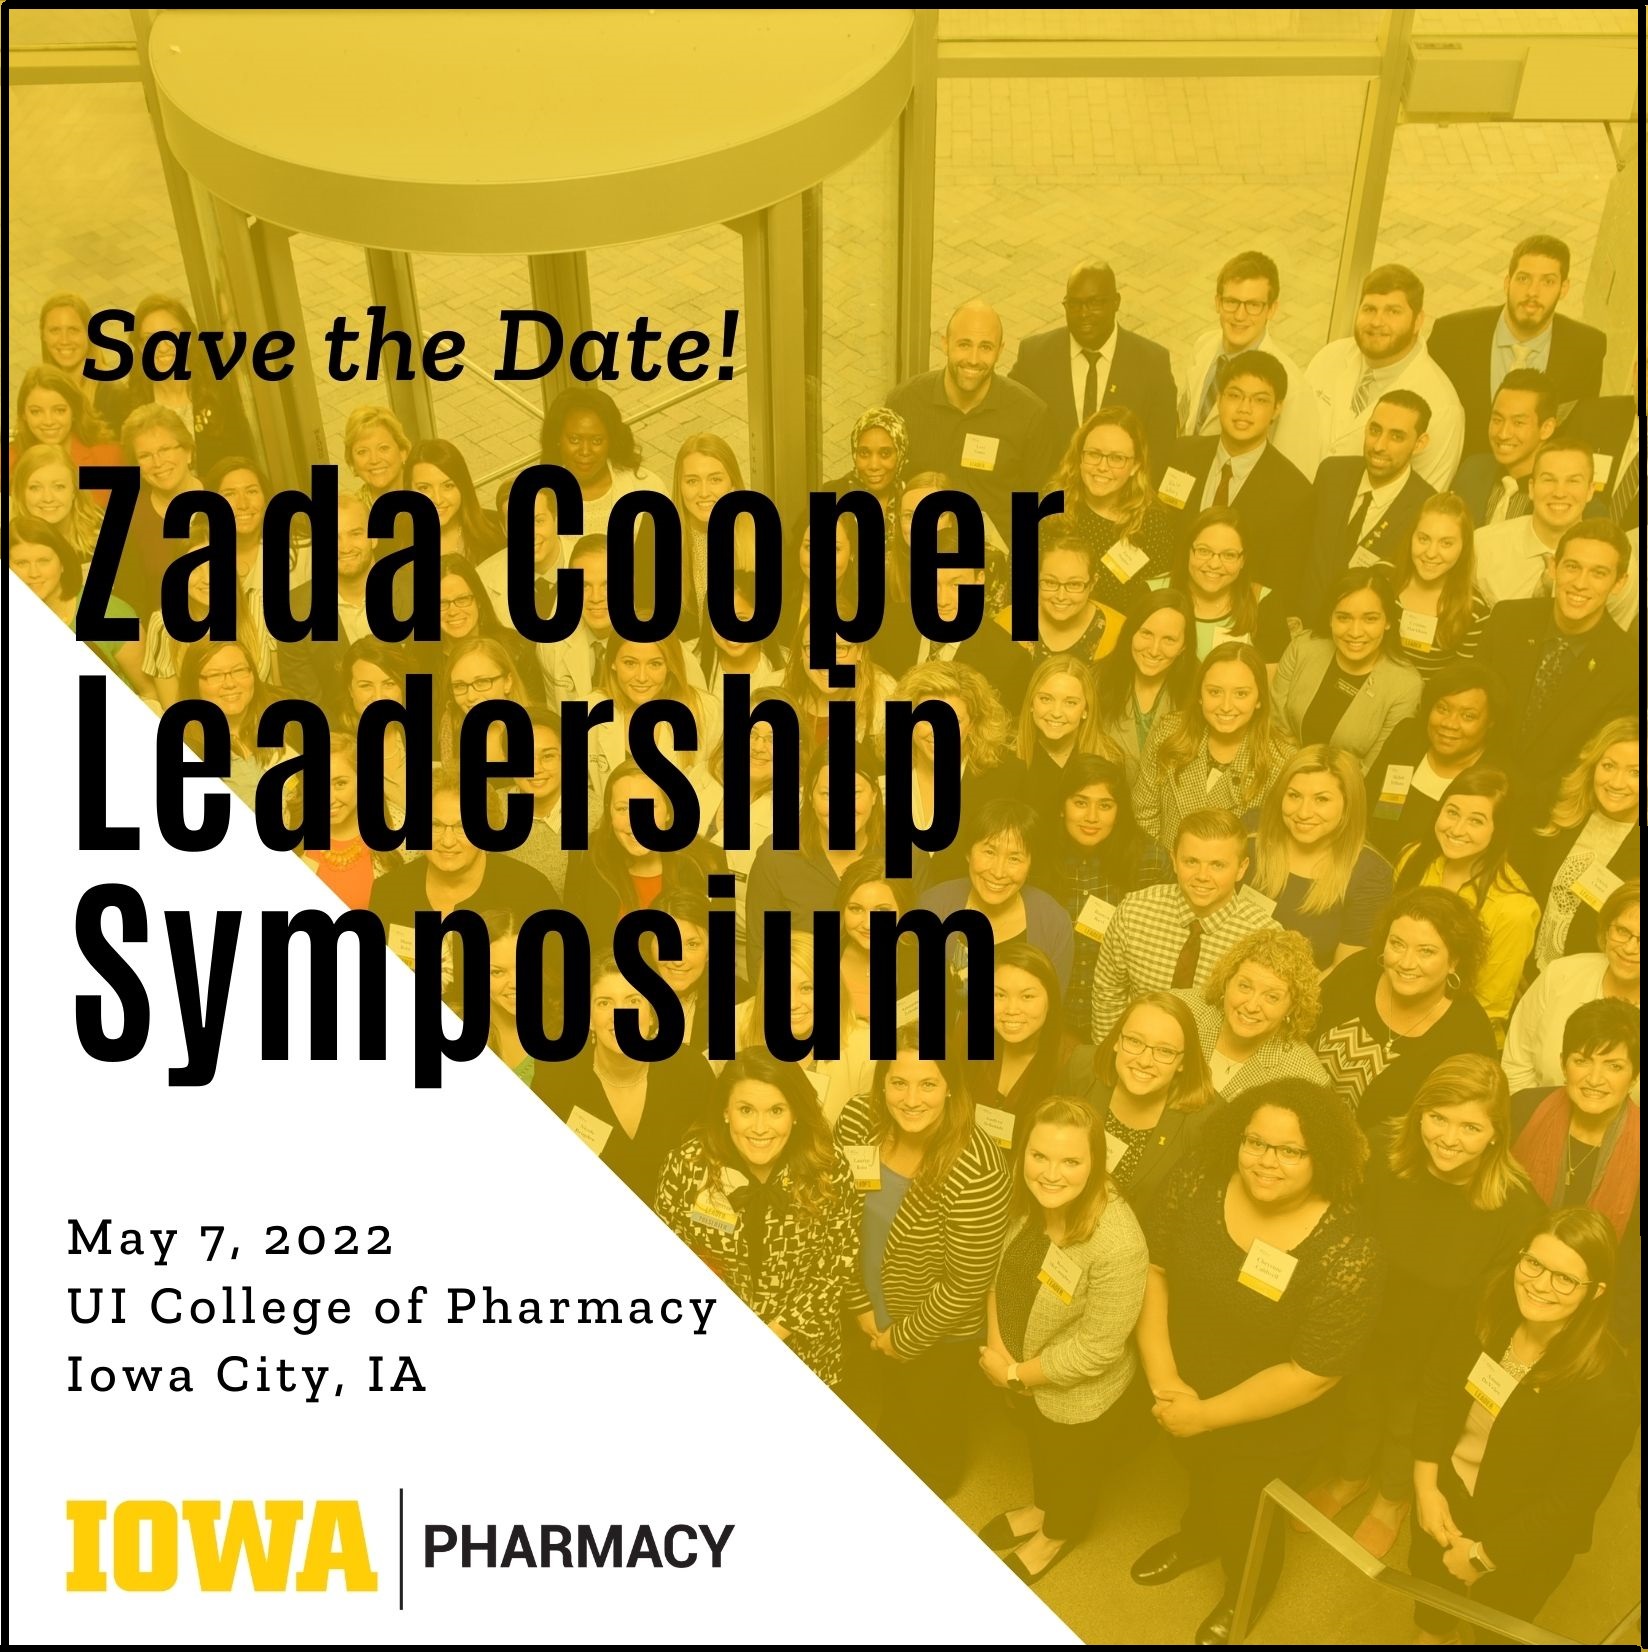 CANCELED - UI College of Pharmacy Zada Cooper Leadership Symposium promotional image